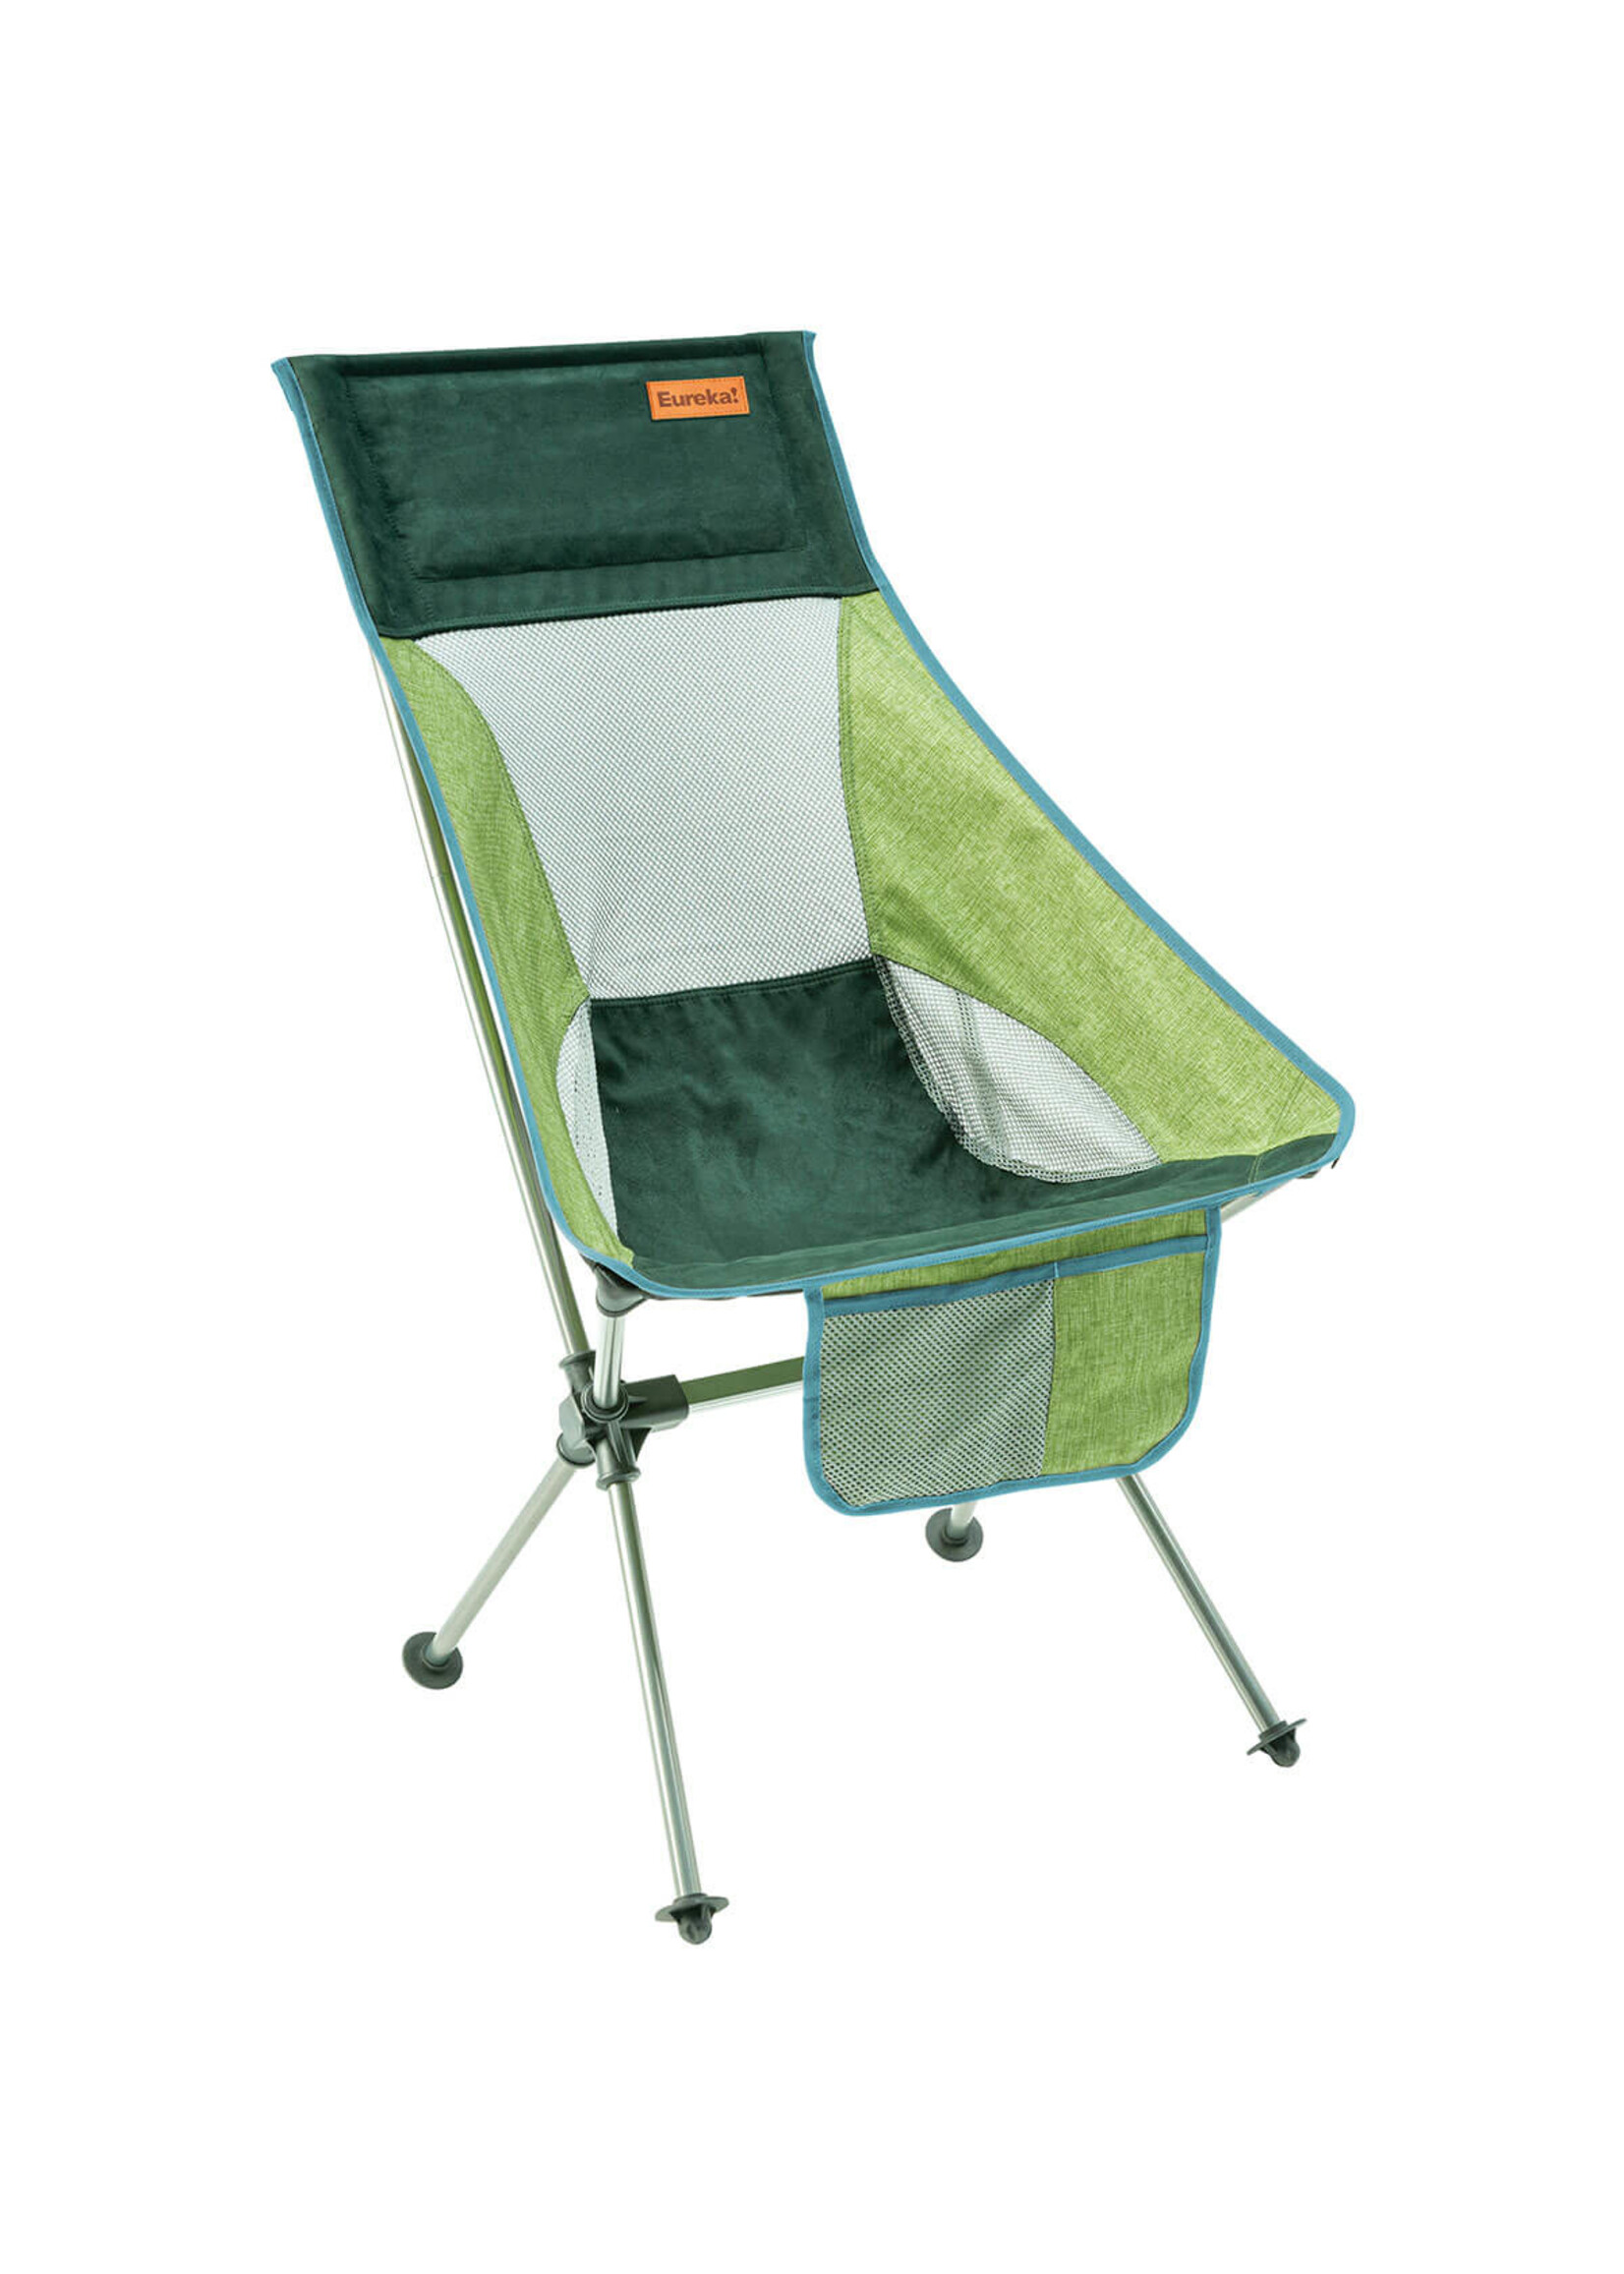 Eureka Tagalong Comfort Camp Chair